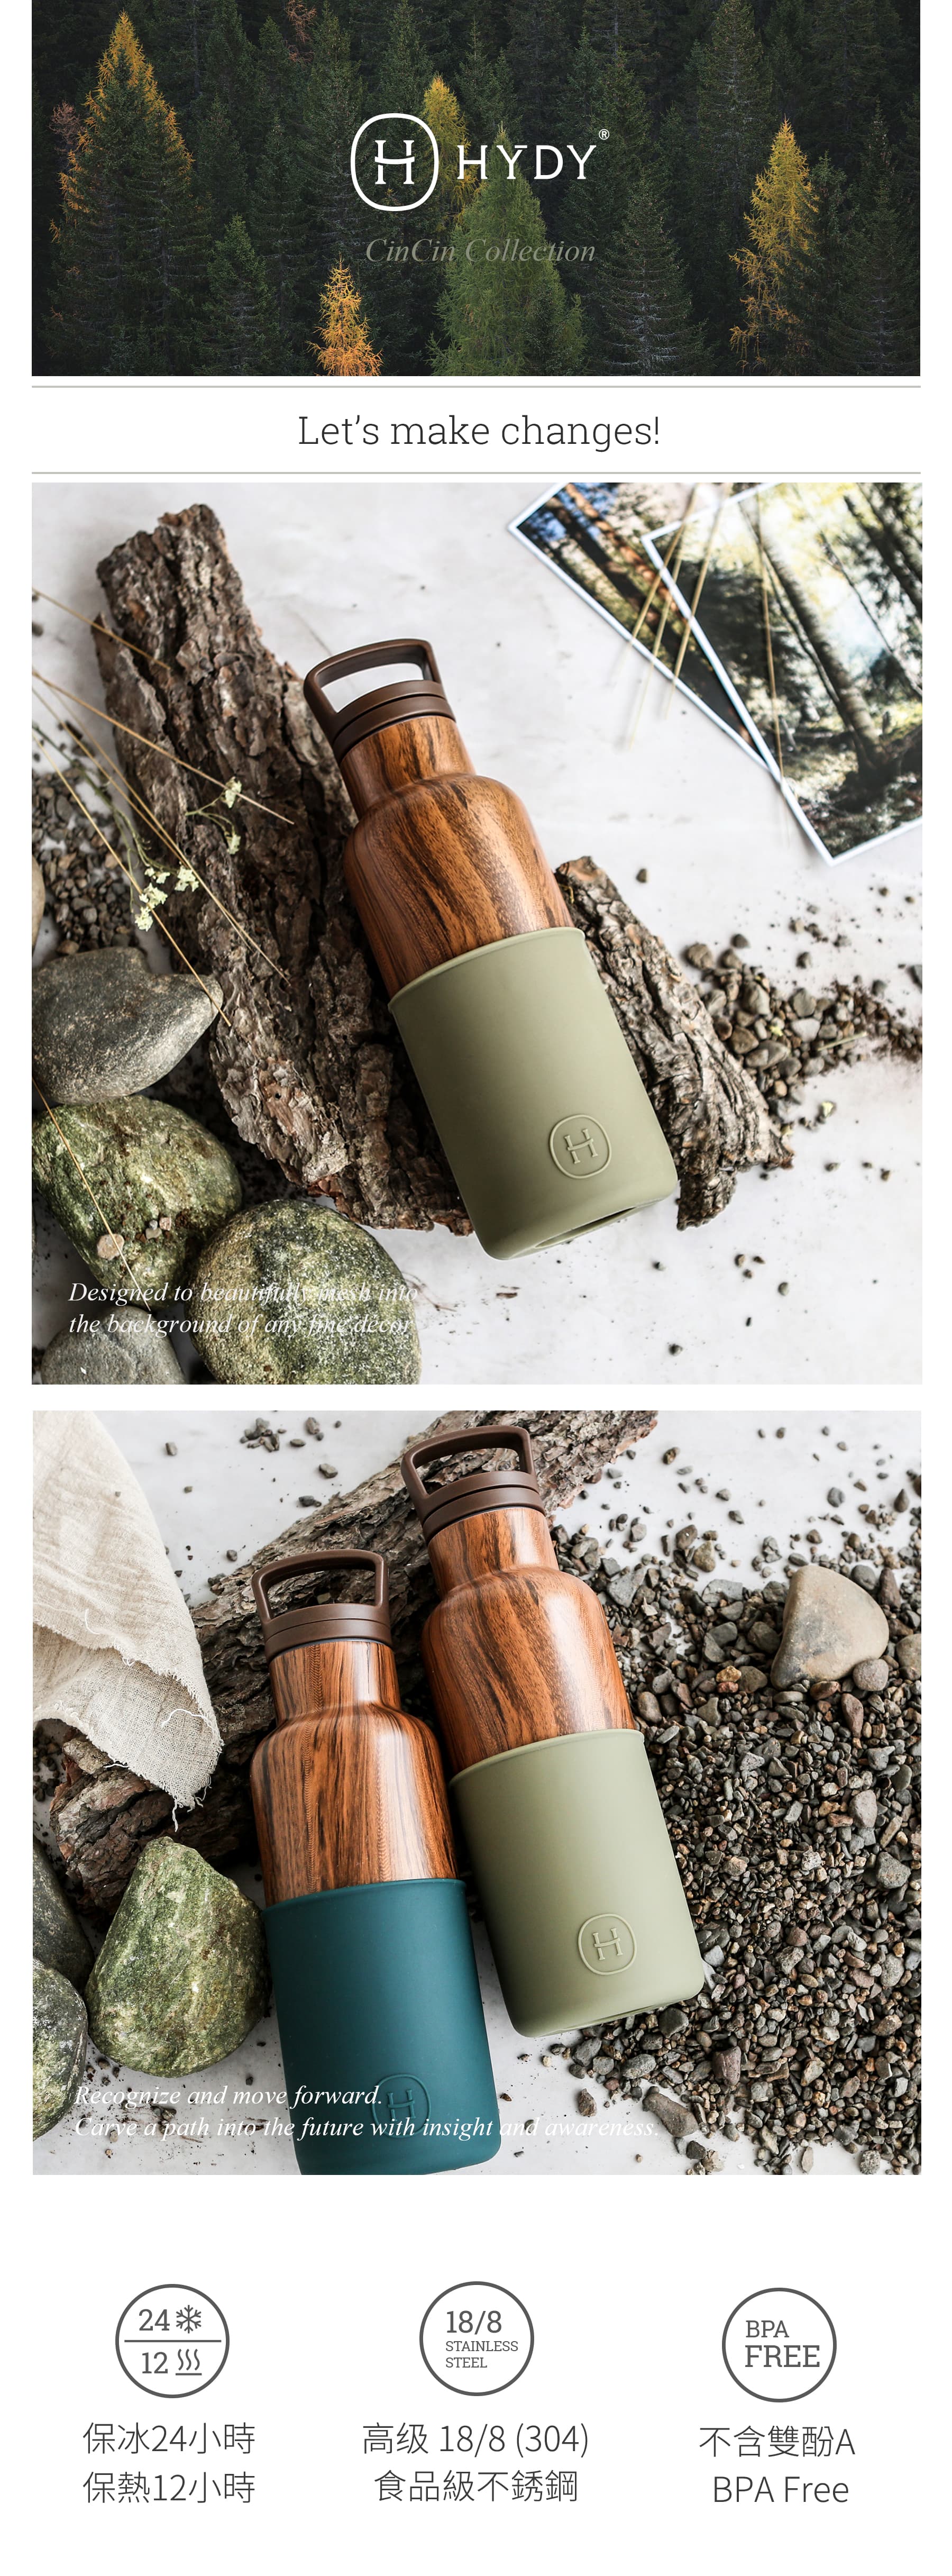 美國 HYDY 時尚不銹鋼保溫水瓶 480ml 木紋瓶 (孔雀綠)